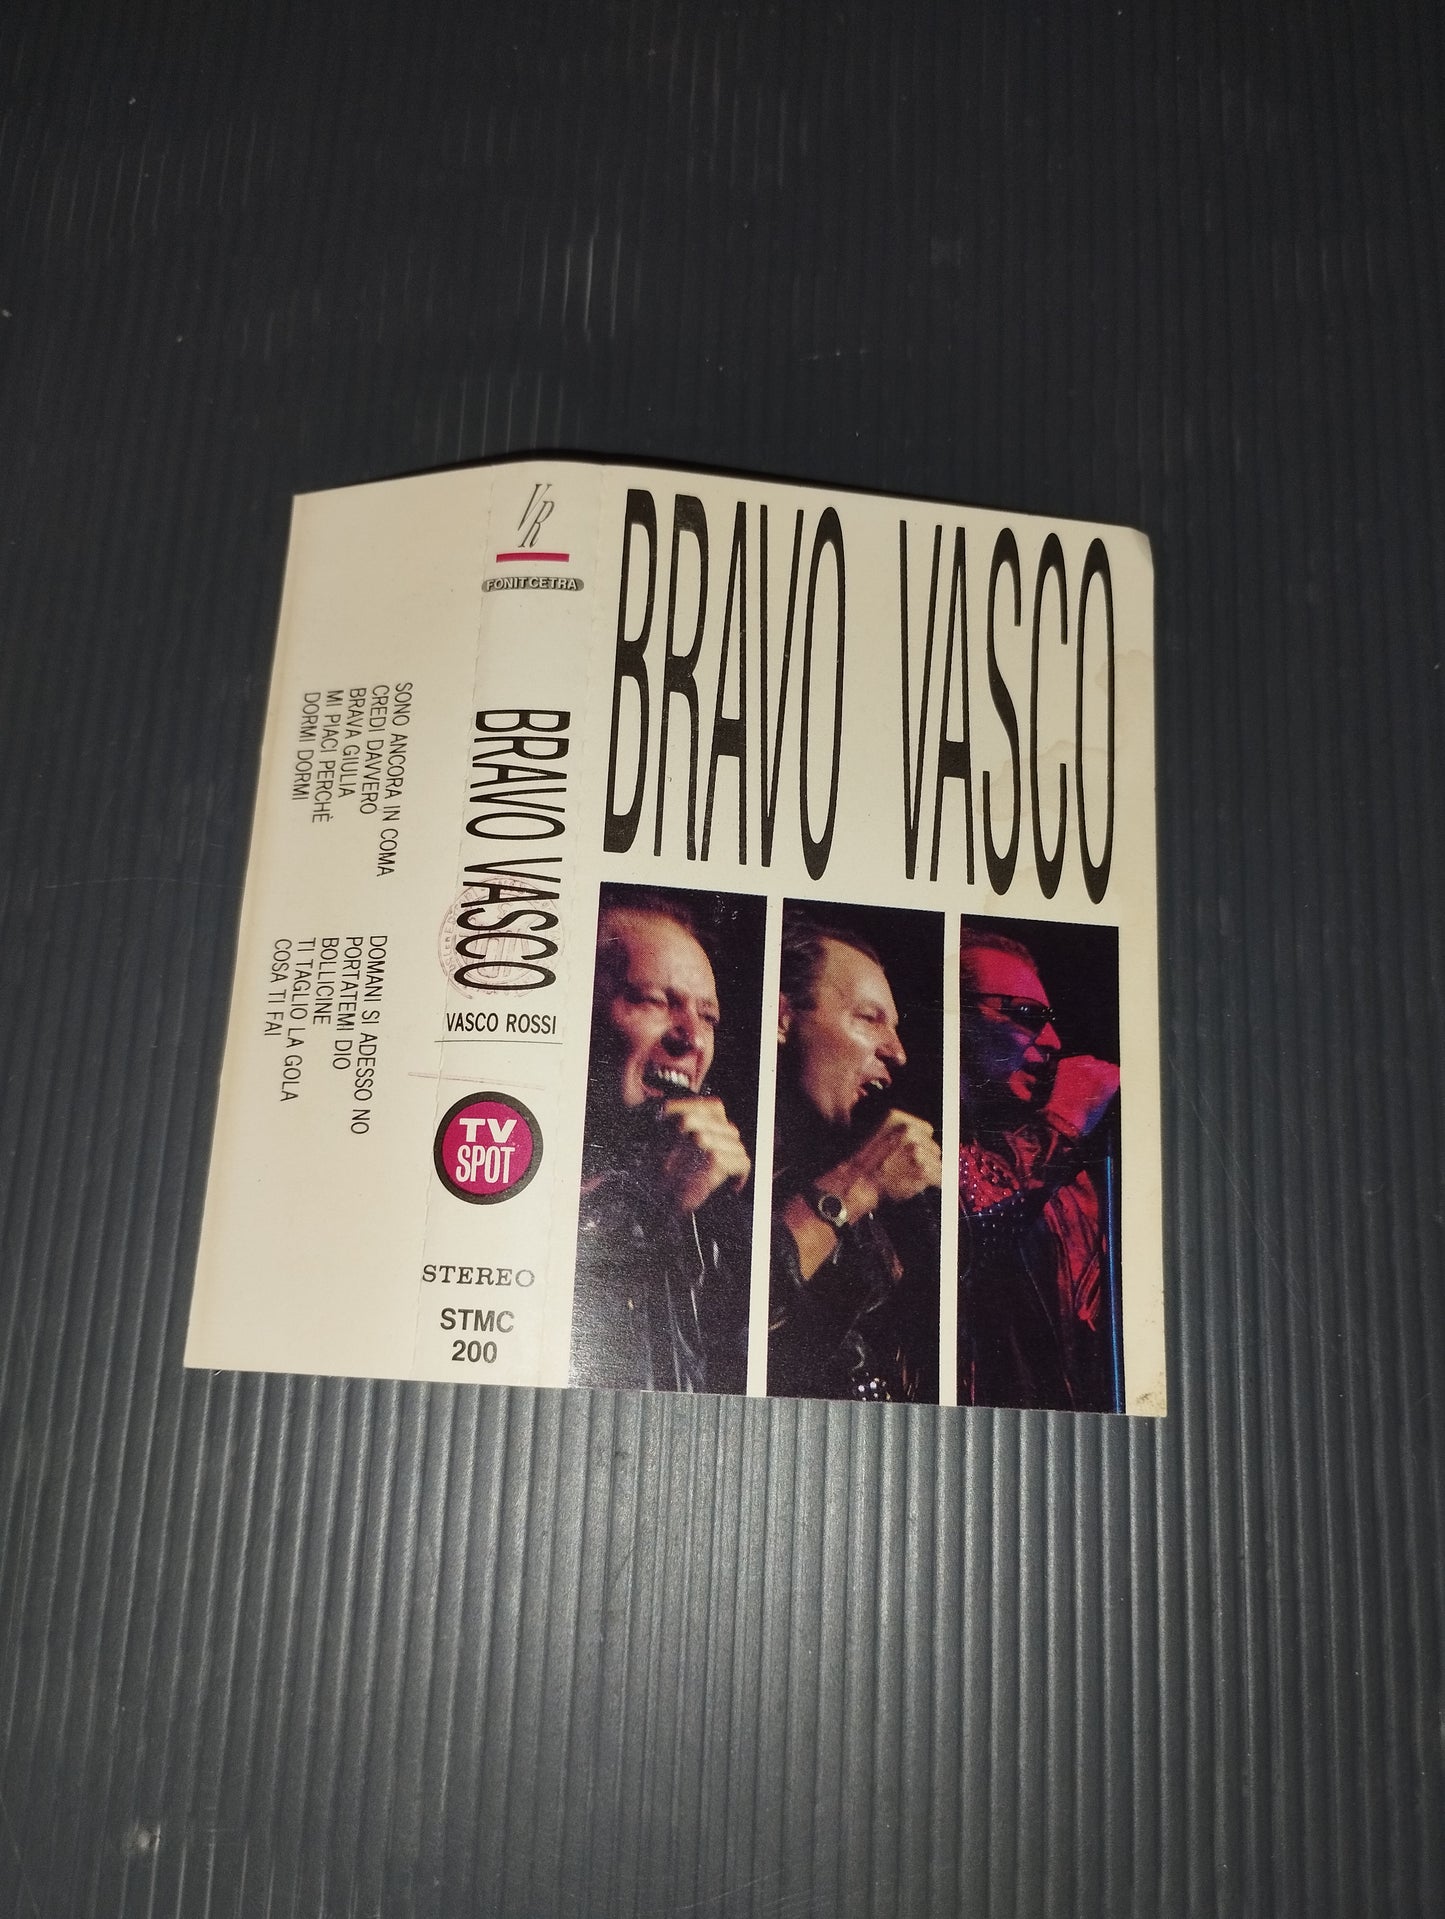 Well done Vasco Vasco Rossi cassette